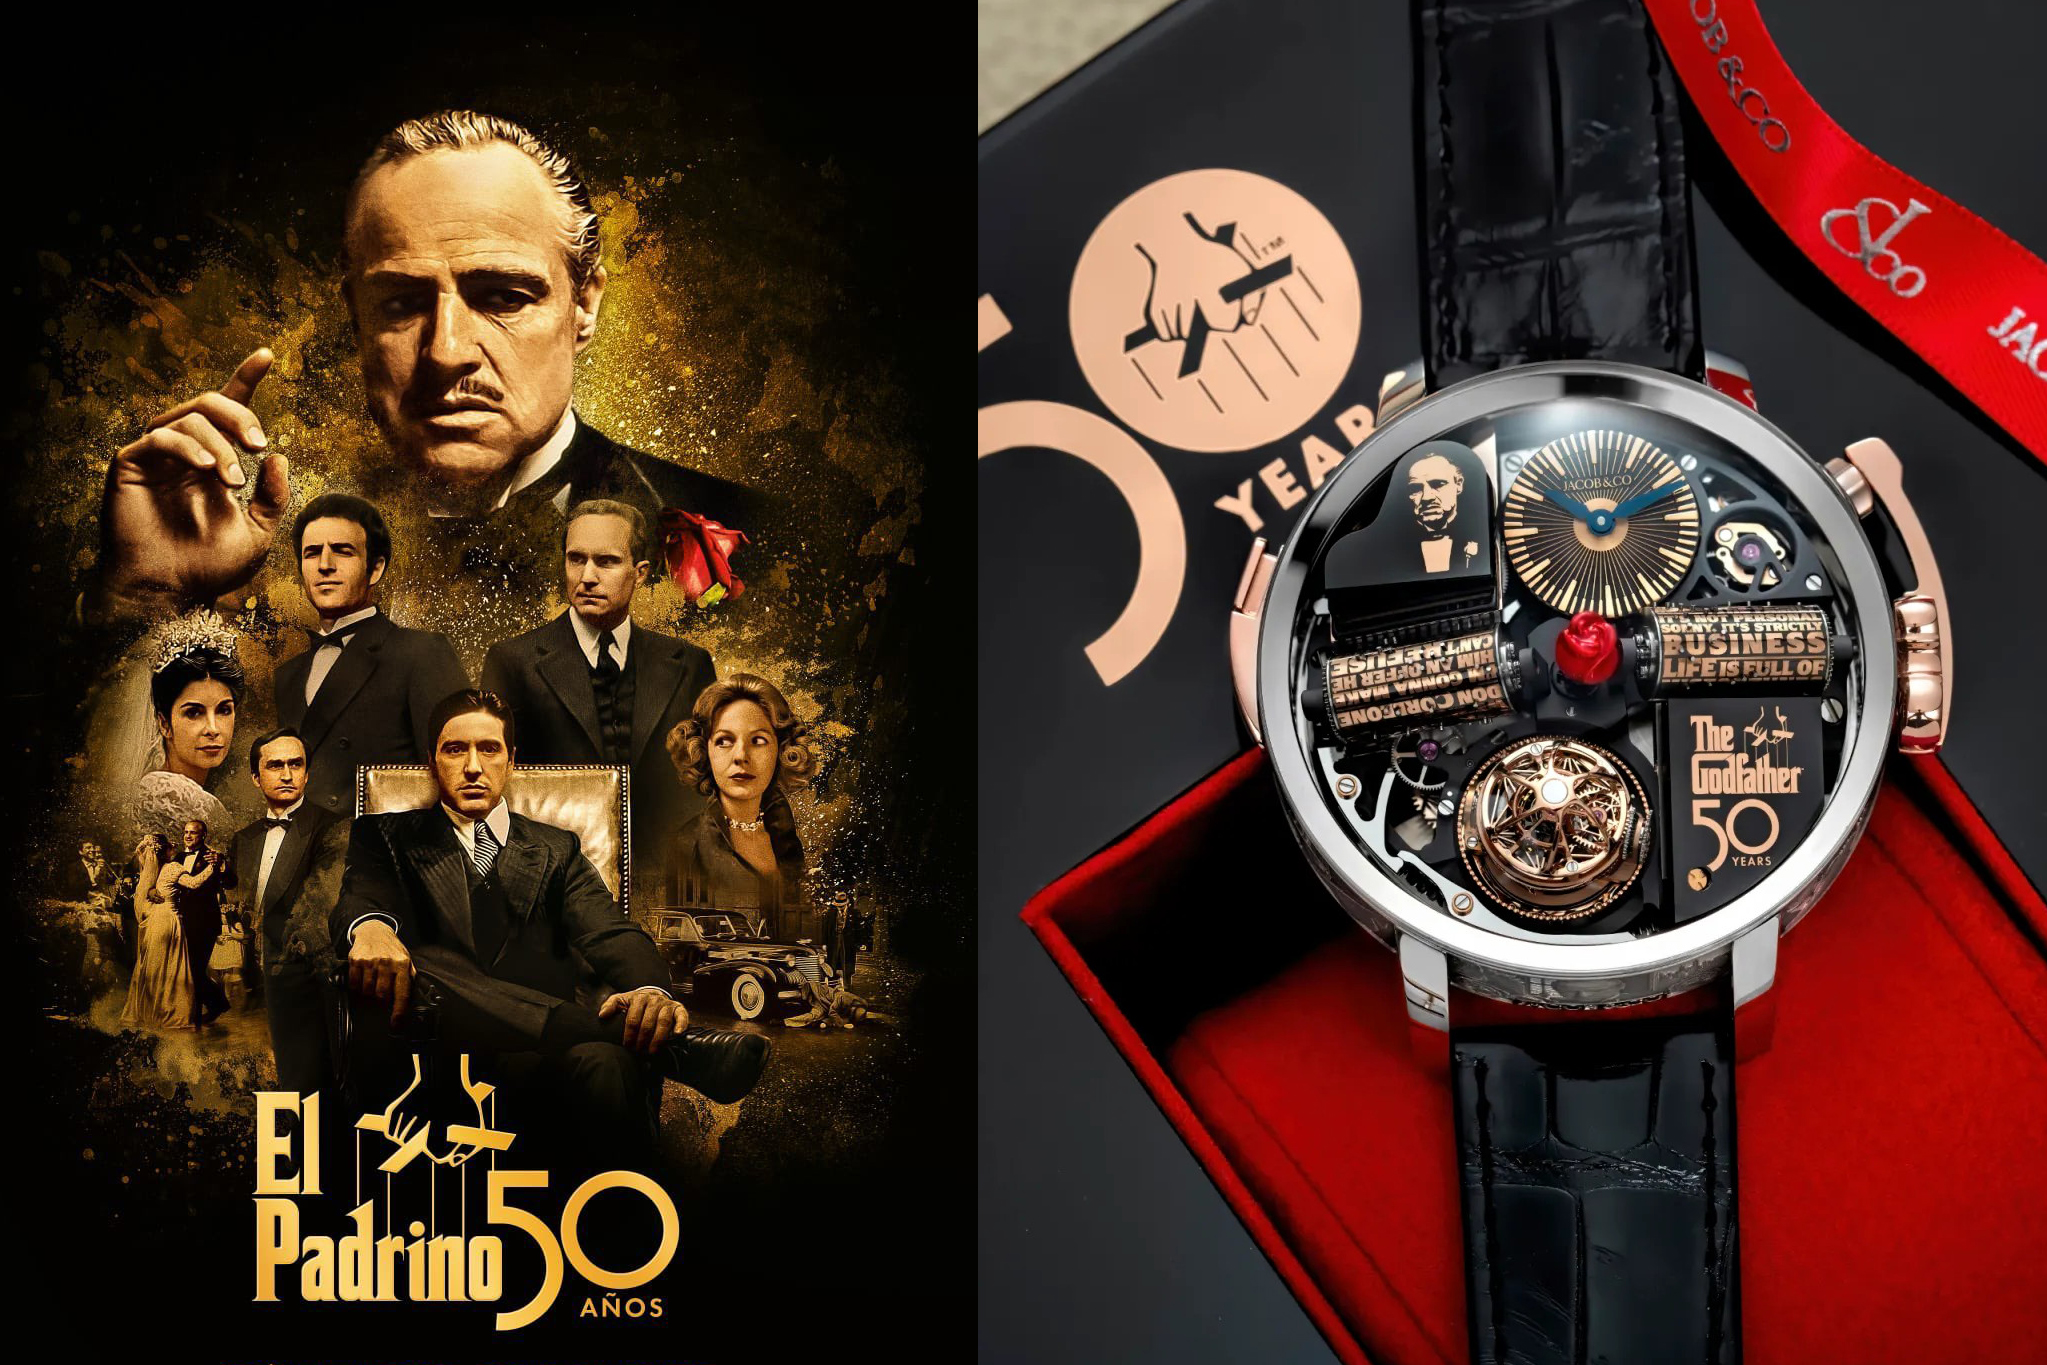 Jacob & Co. ra mắt ấn phẩm Opera Godfather 50th Anniversary kỷ niệm 50 năm ra rạp của bộ phim “The Godfather”